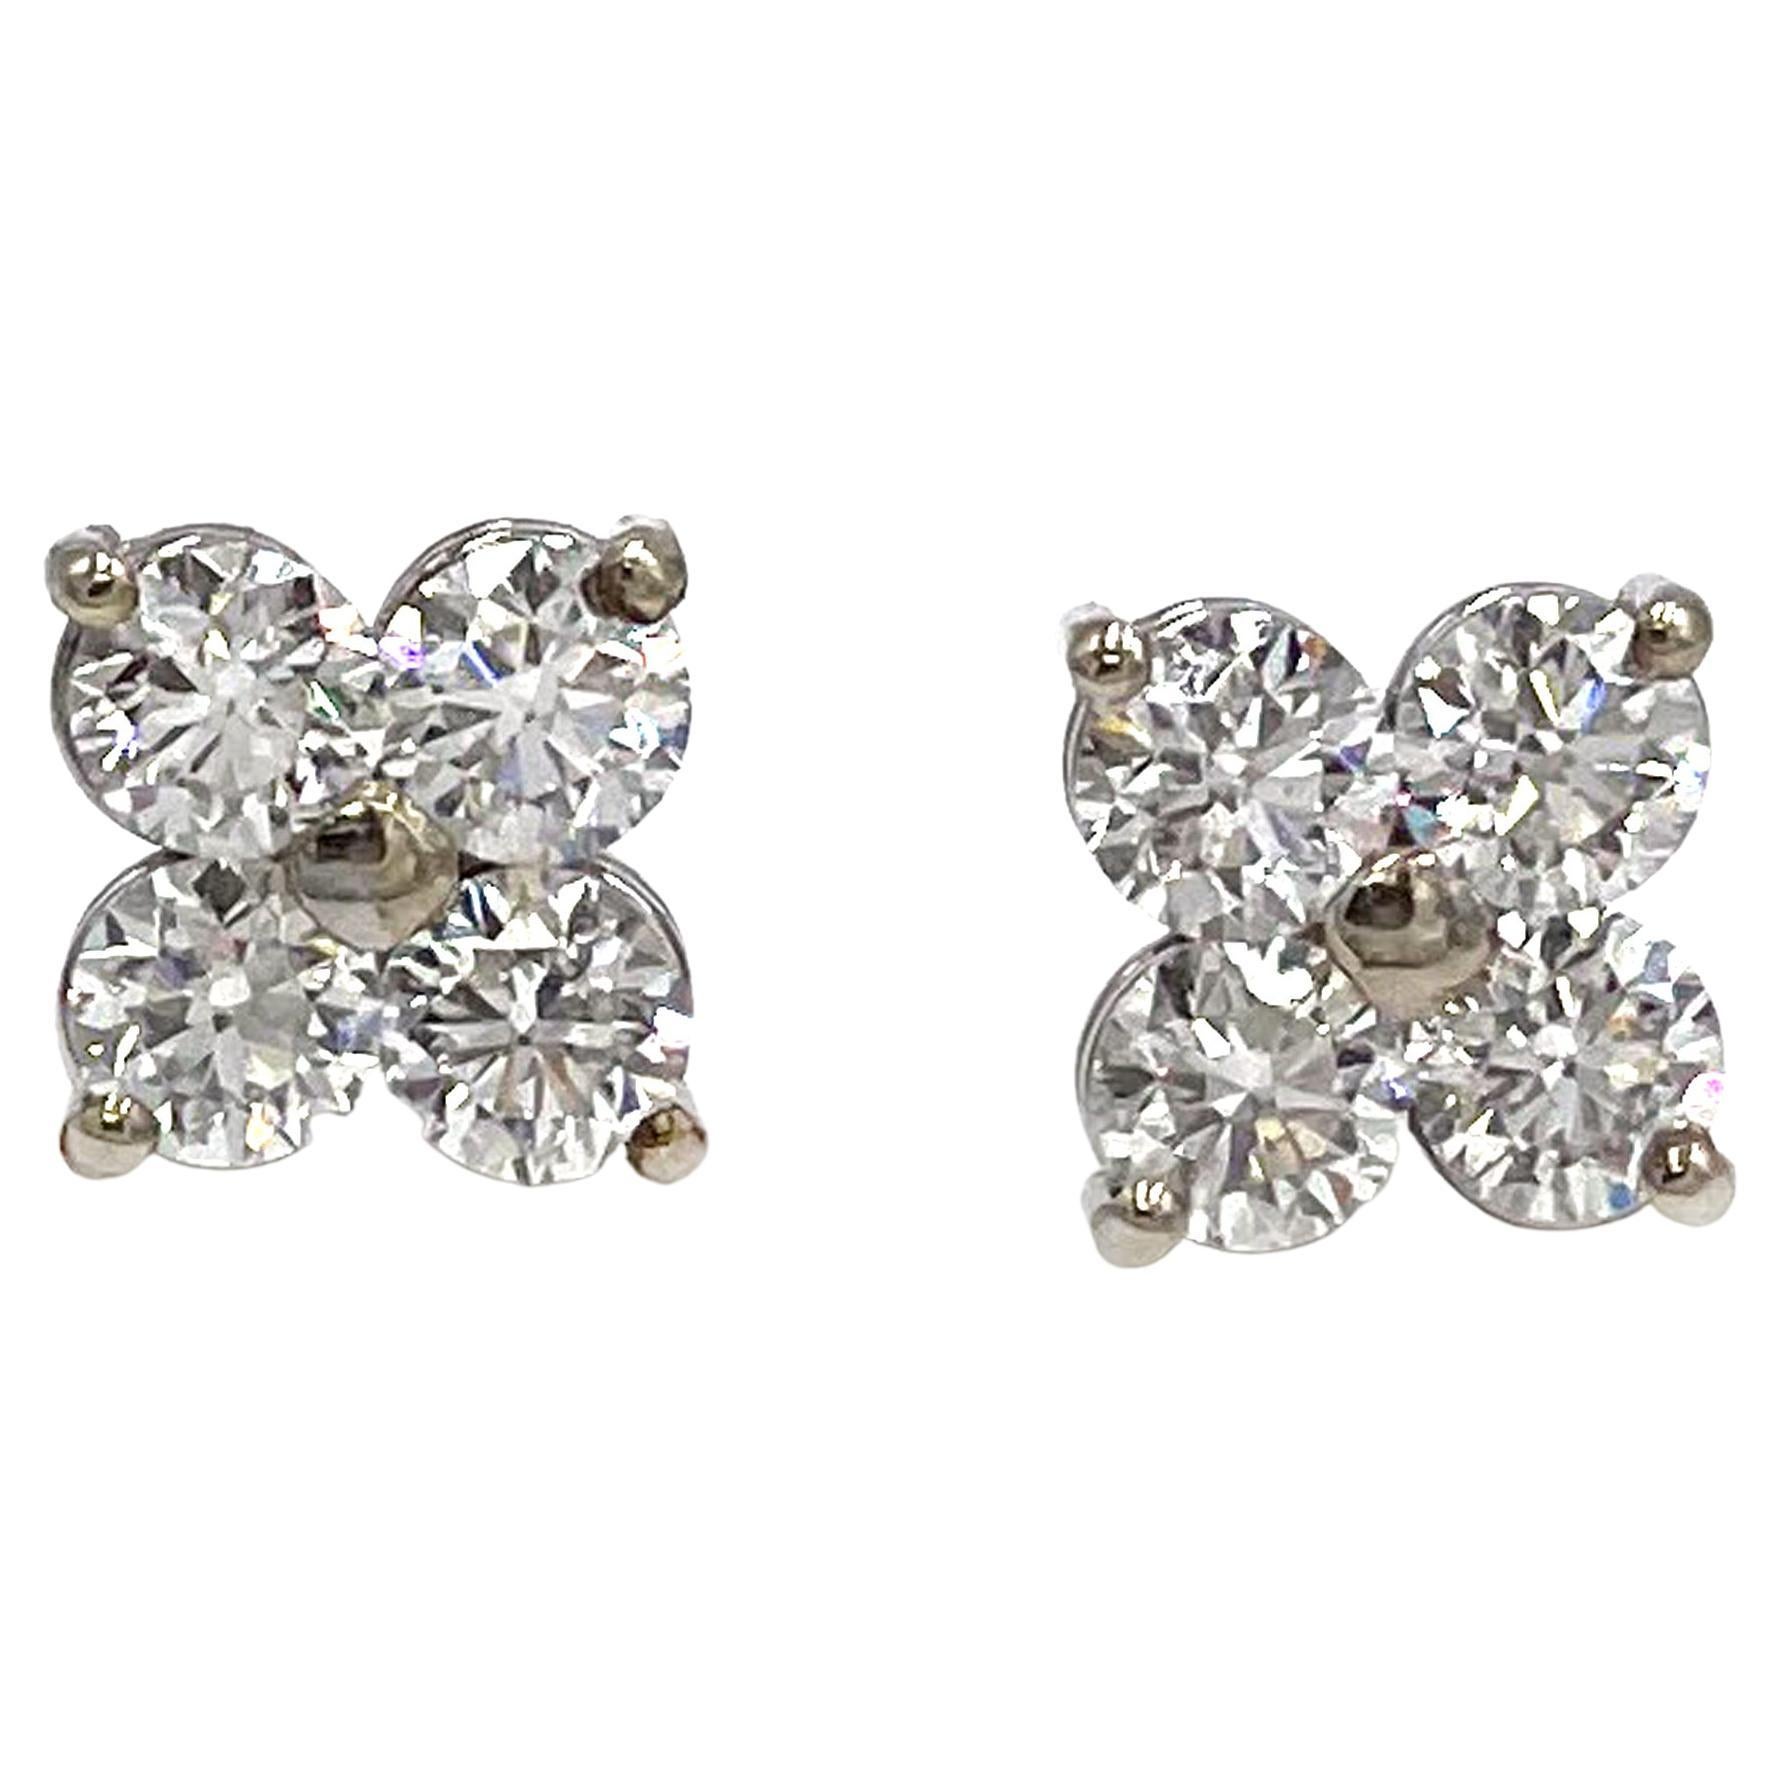 Diamond Quatrefoil Cluster Stud Earrings in 14K White Gold